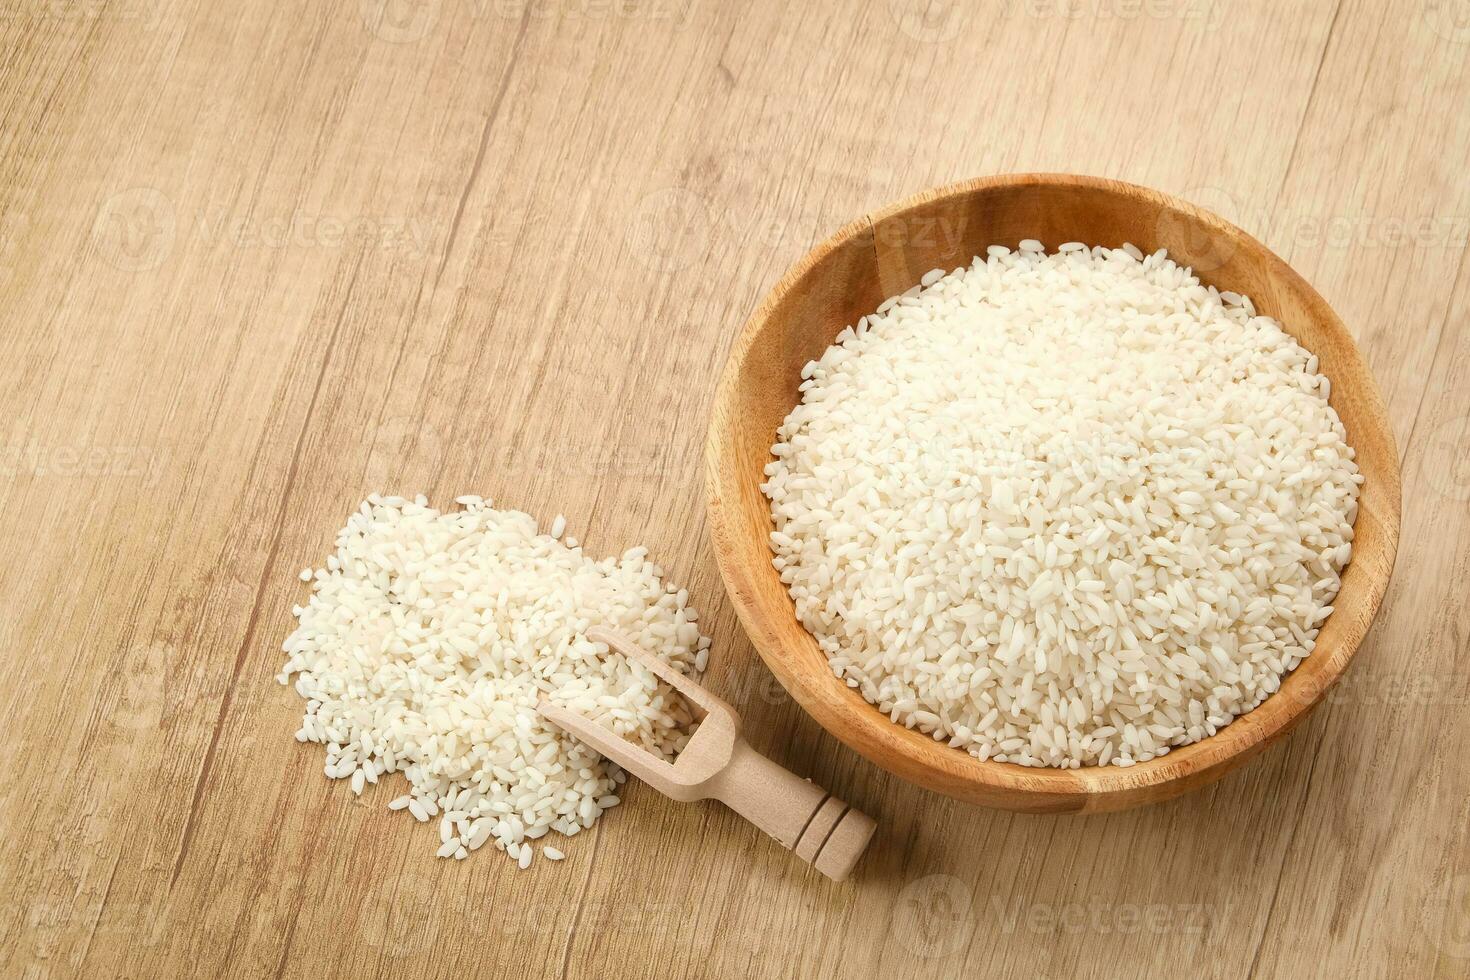 ris korn för zakat, islamic zakat begrepp foto